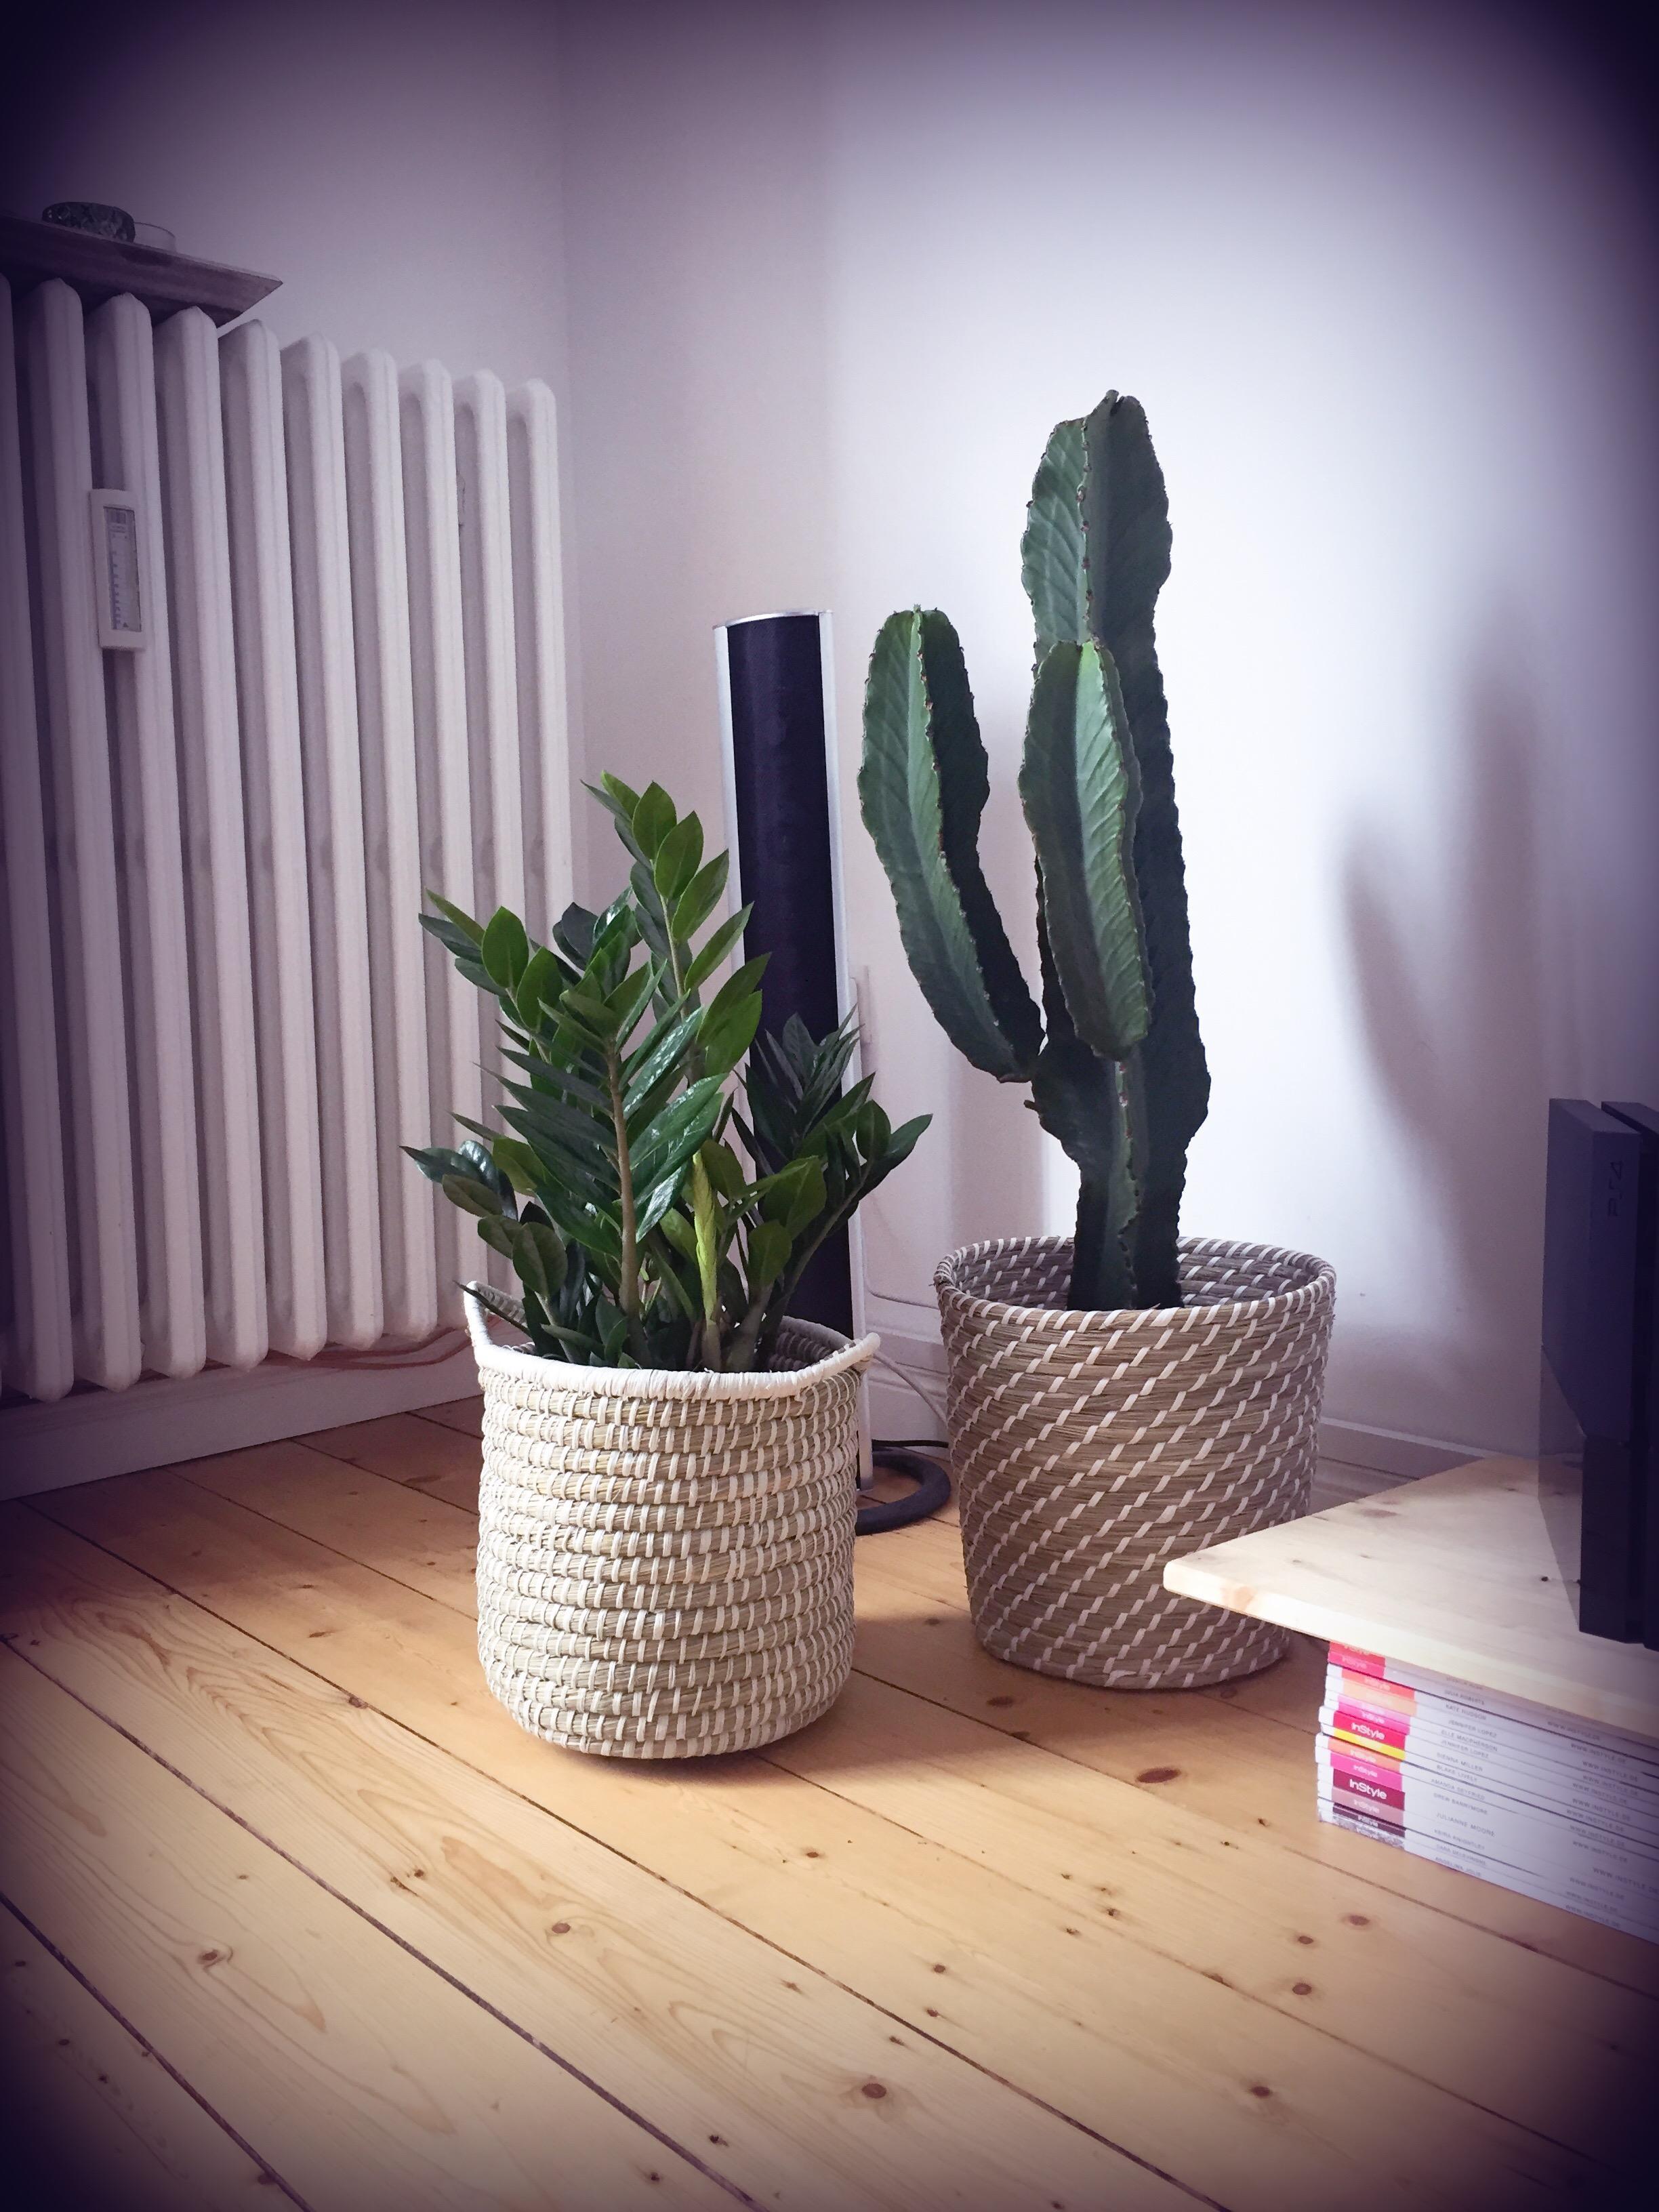 #kaktus #dielenboden